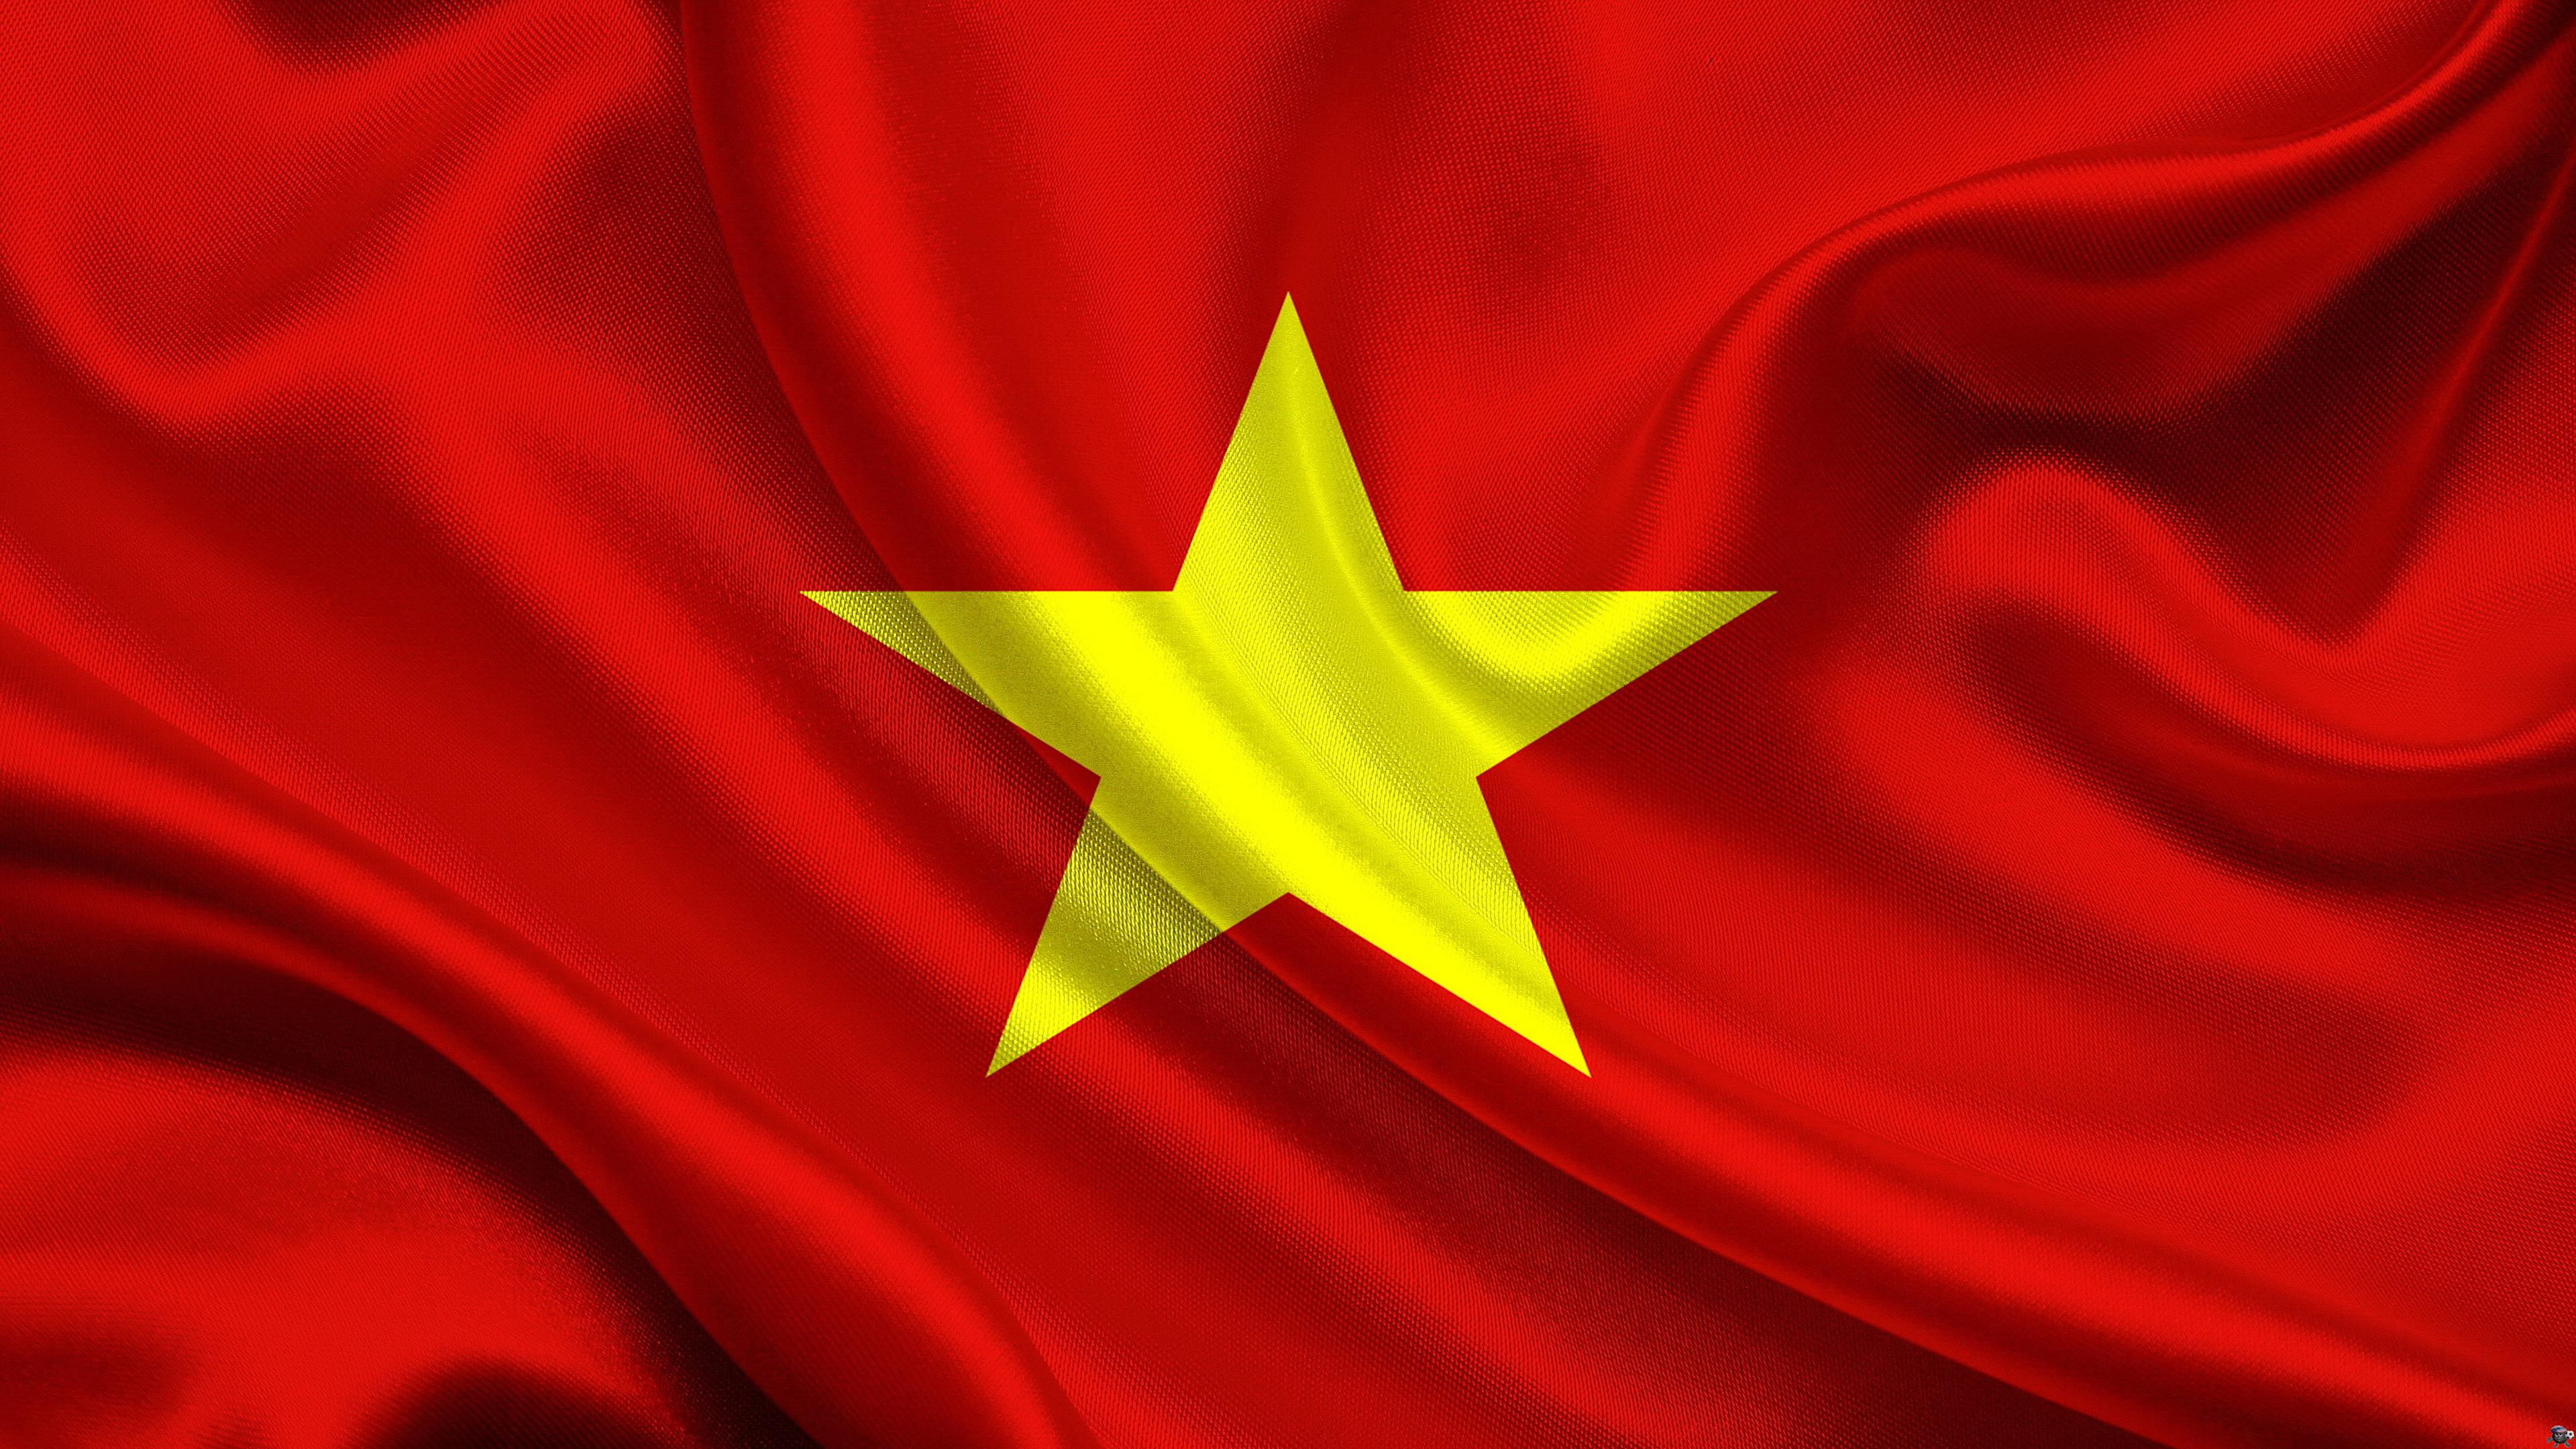 Hình nền lá cờ Việt Nam ngày càng trở nên phổ biến, mang đến sự tự hào và tình yêu với quốc gia. Sử dụng hình nền lá cờ Việt Nam giúp bạn ghi nhận lại những khoảnh khắc tuyệt vời, đầy ý nghĩa trong cuộc sống. Dù đó là cho màn hình điện thoại hay laptop của bạn, bạn sẽ cảm thấy tự hào khi sử dụng hình nền lá cờ Việt Nam tinh tế này.